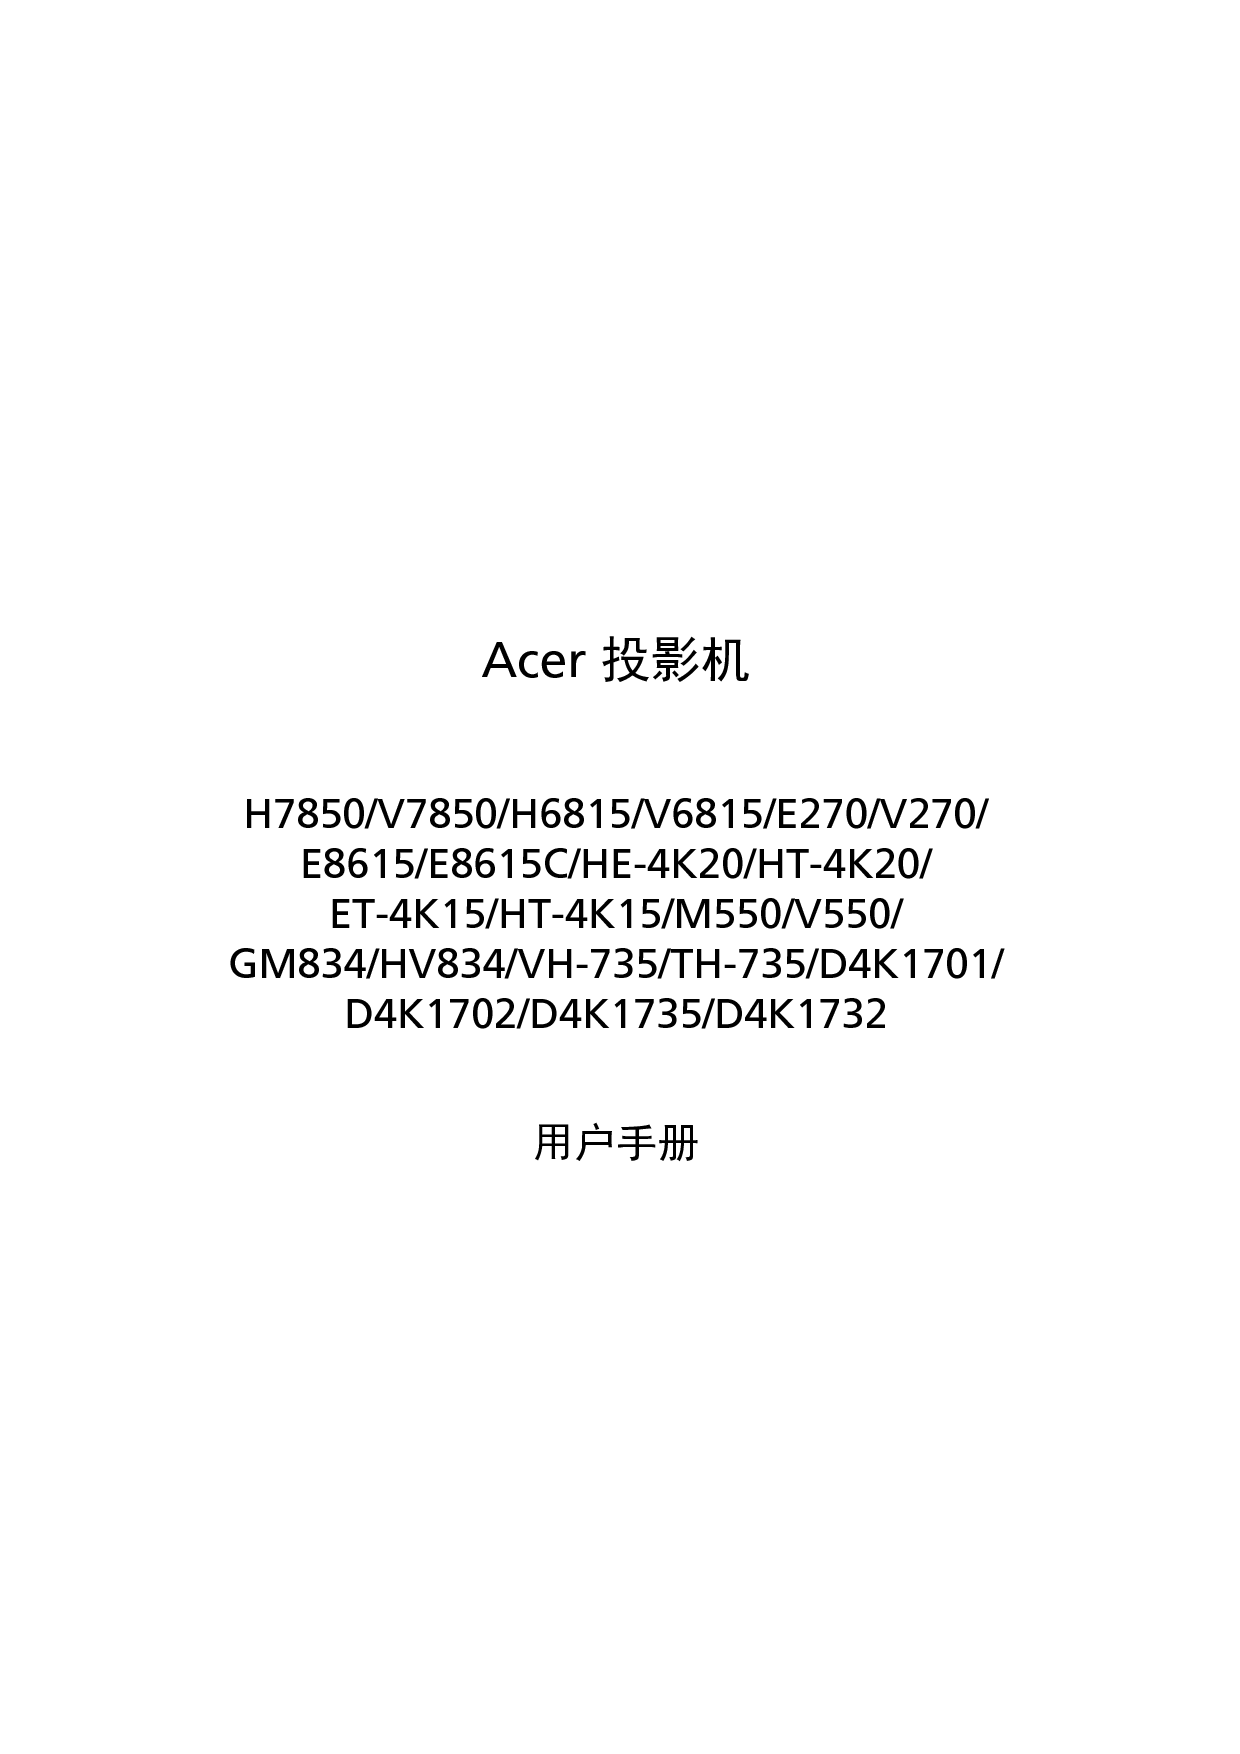 宏碁 Acer D4K1701, E270, E8615, ET-4K15, GM834, H6815, H7850, HE-4K20, HV834, M550, TH-735 用户手册 封面